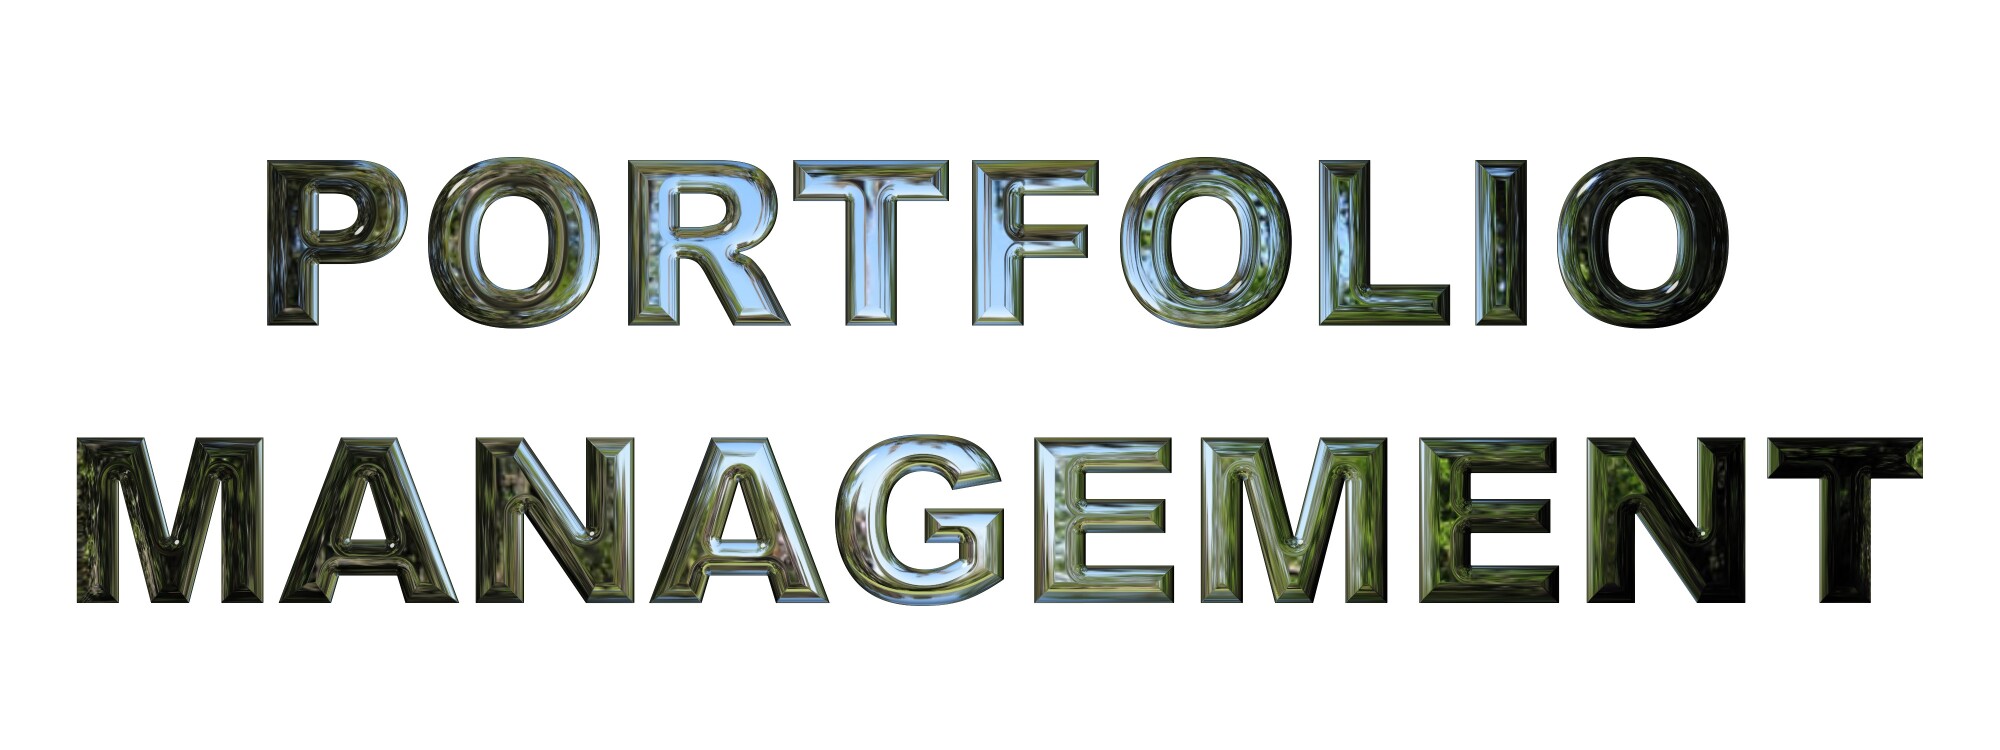 Types of Portfolio Management